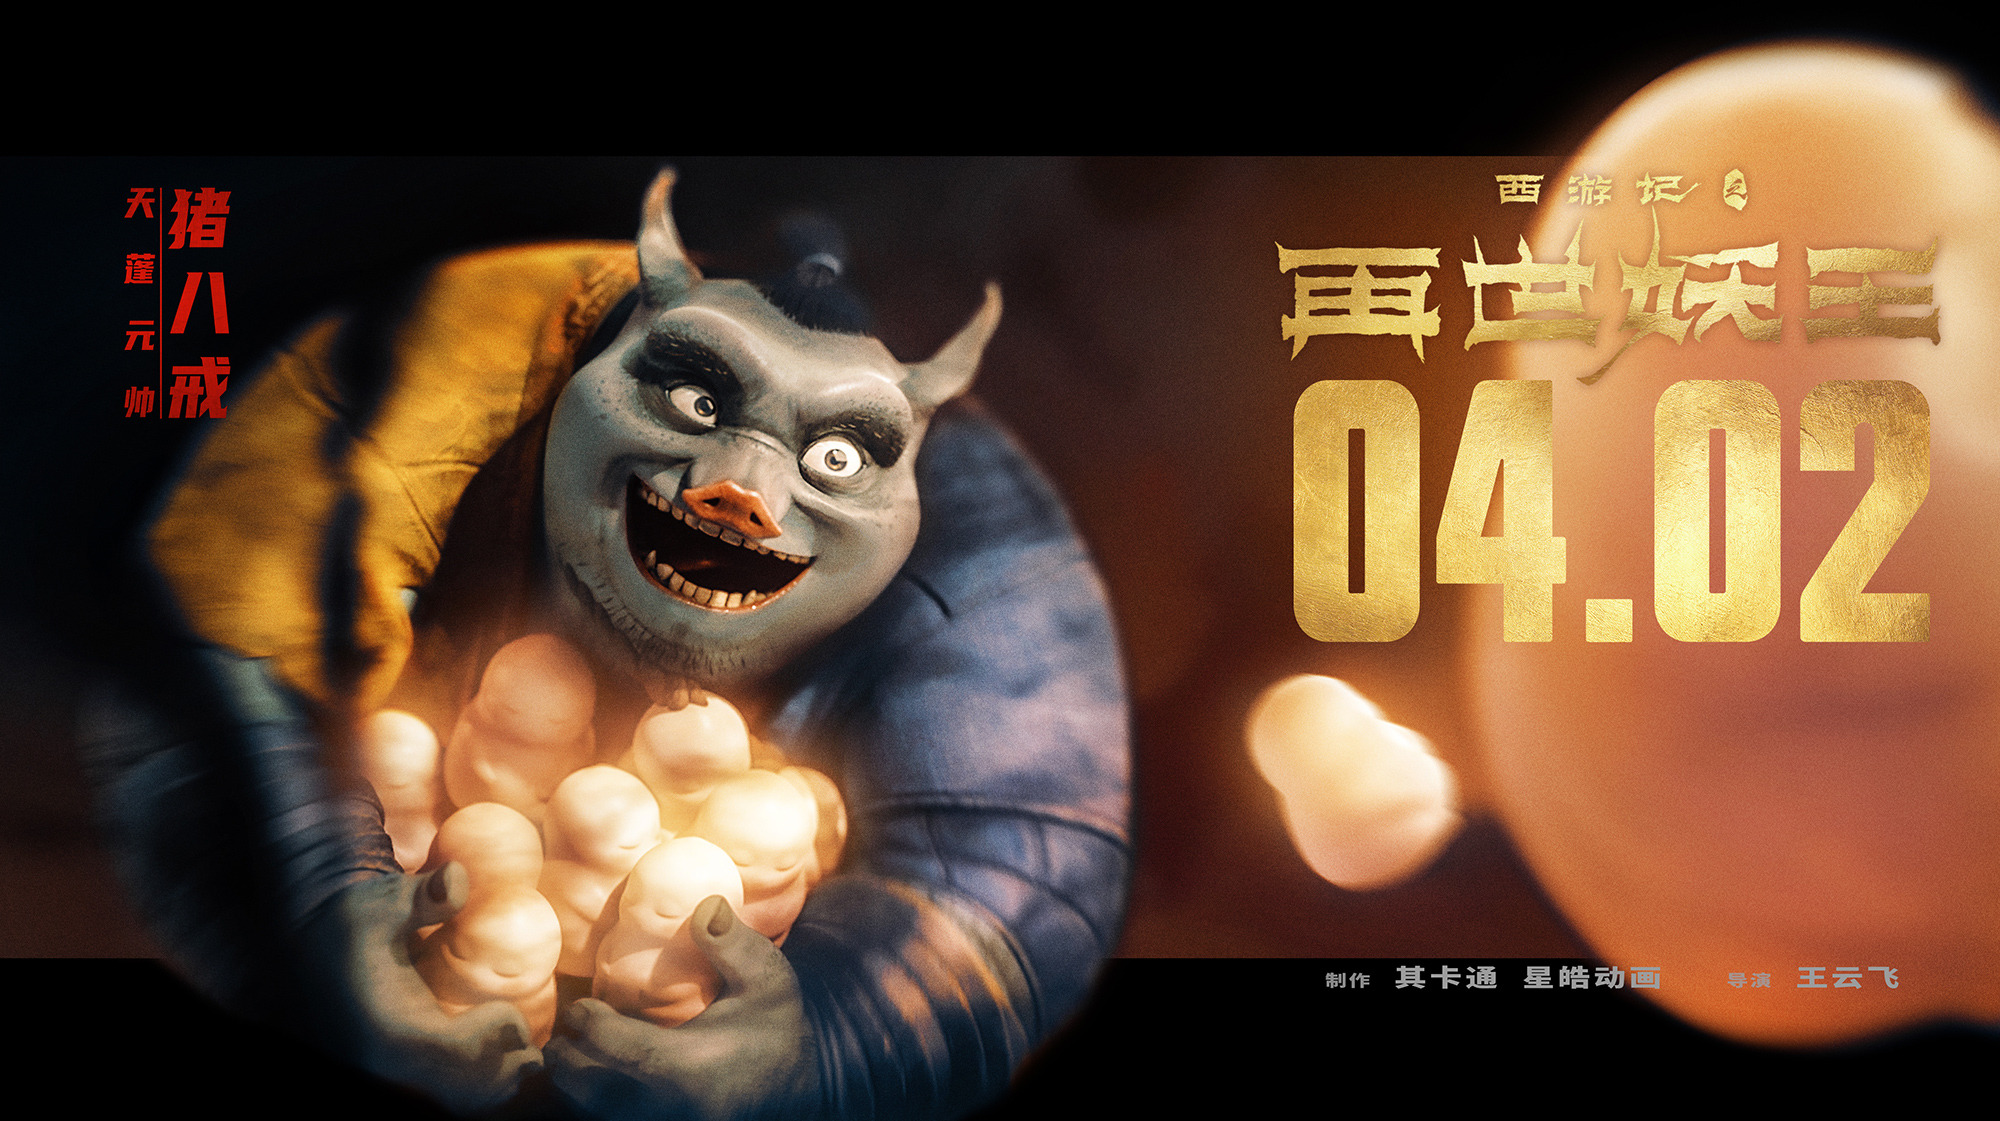 Mega Sized Movie Poster Image for Xi You Ji Zhi Zai Shi Yao Wang (#15 of 21)